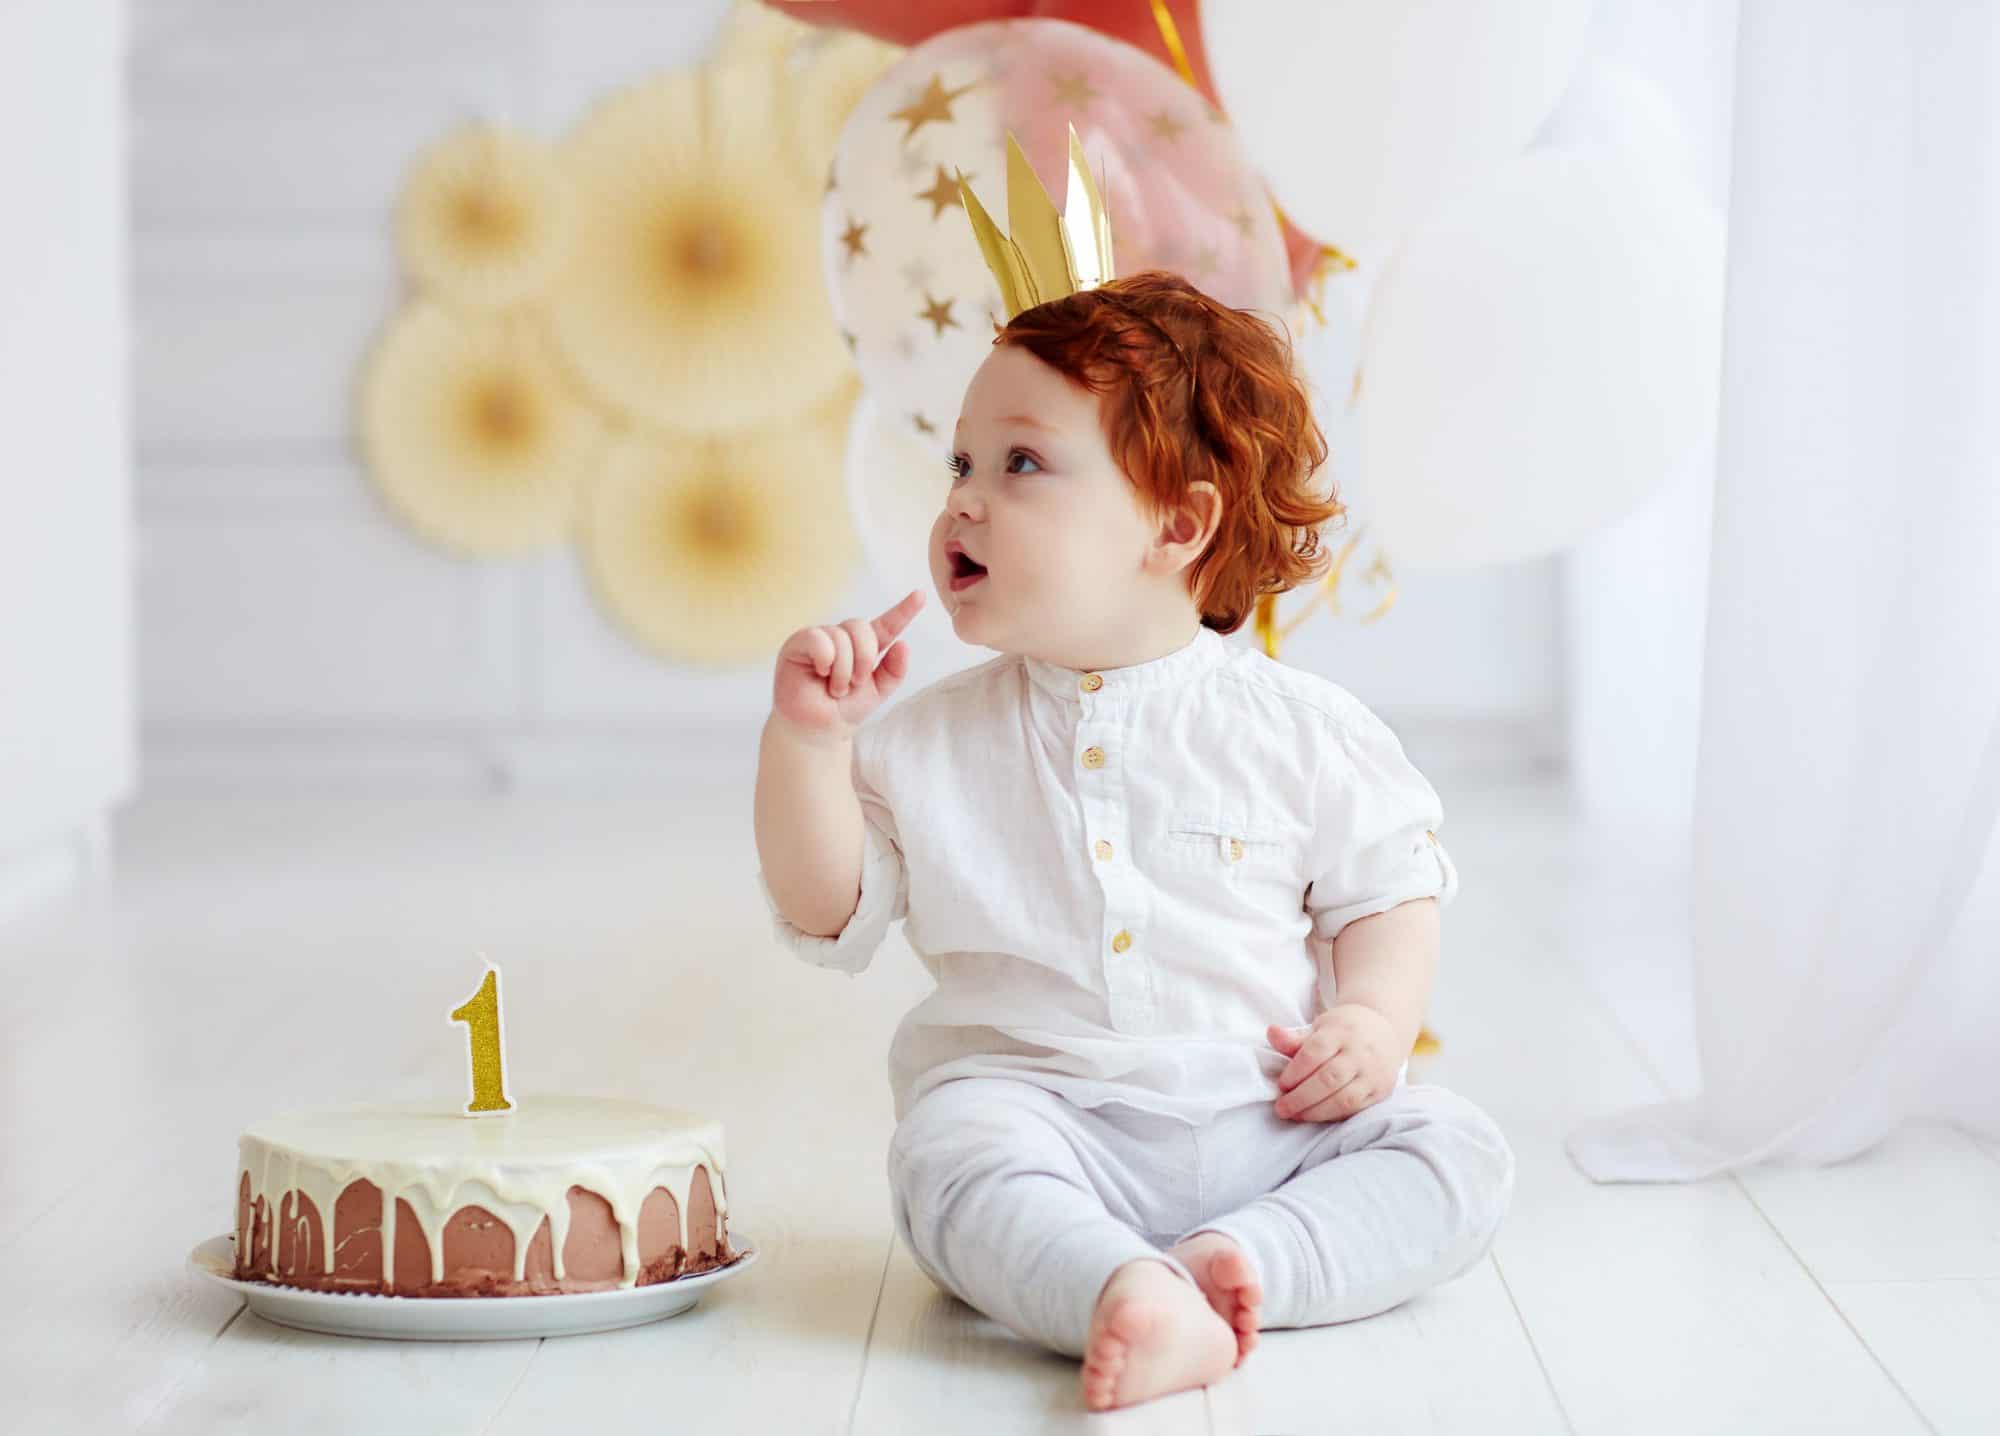 Tartas sanas para los cumpleaños - Criar con Sentido Común